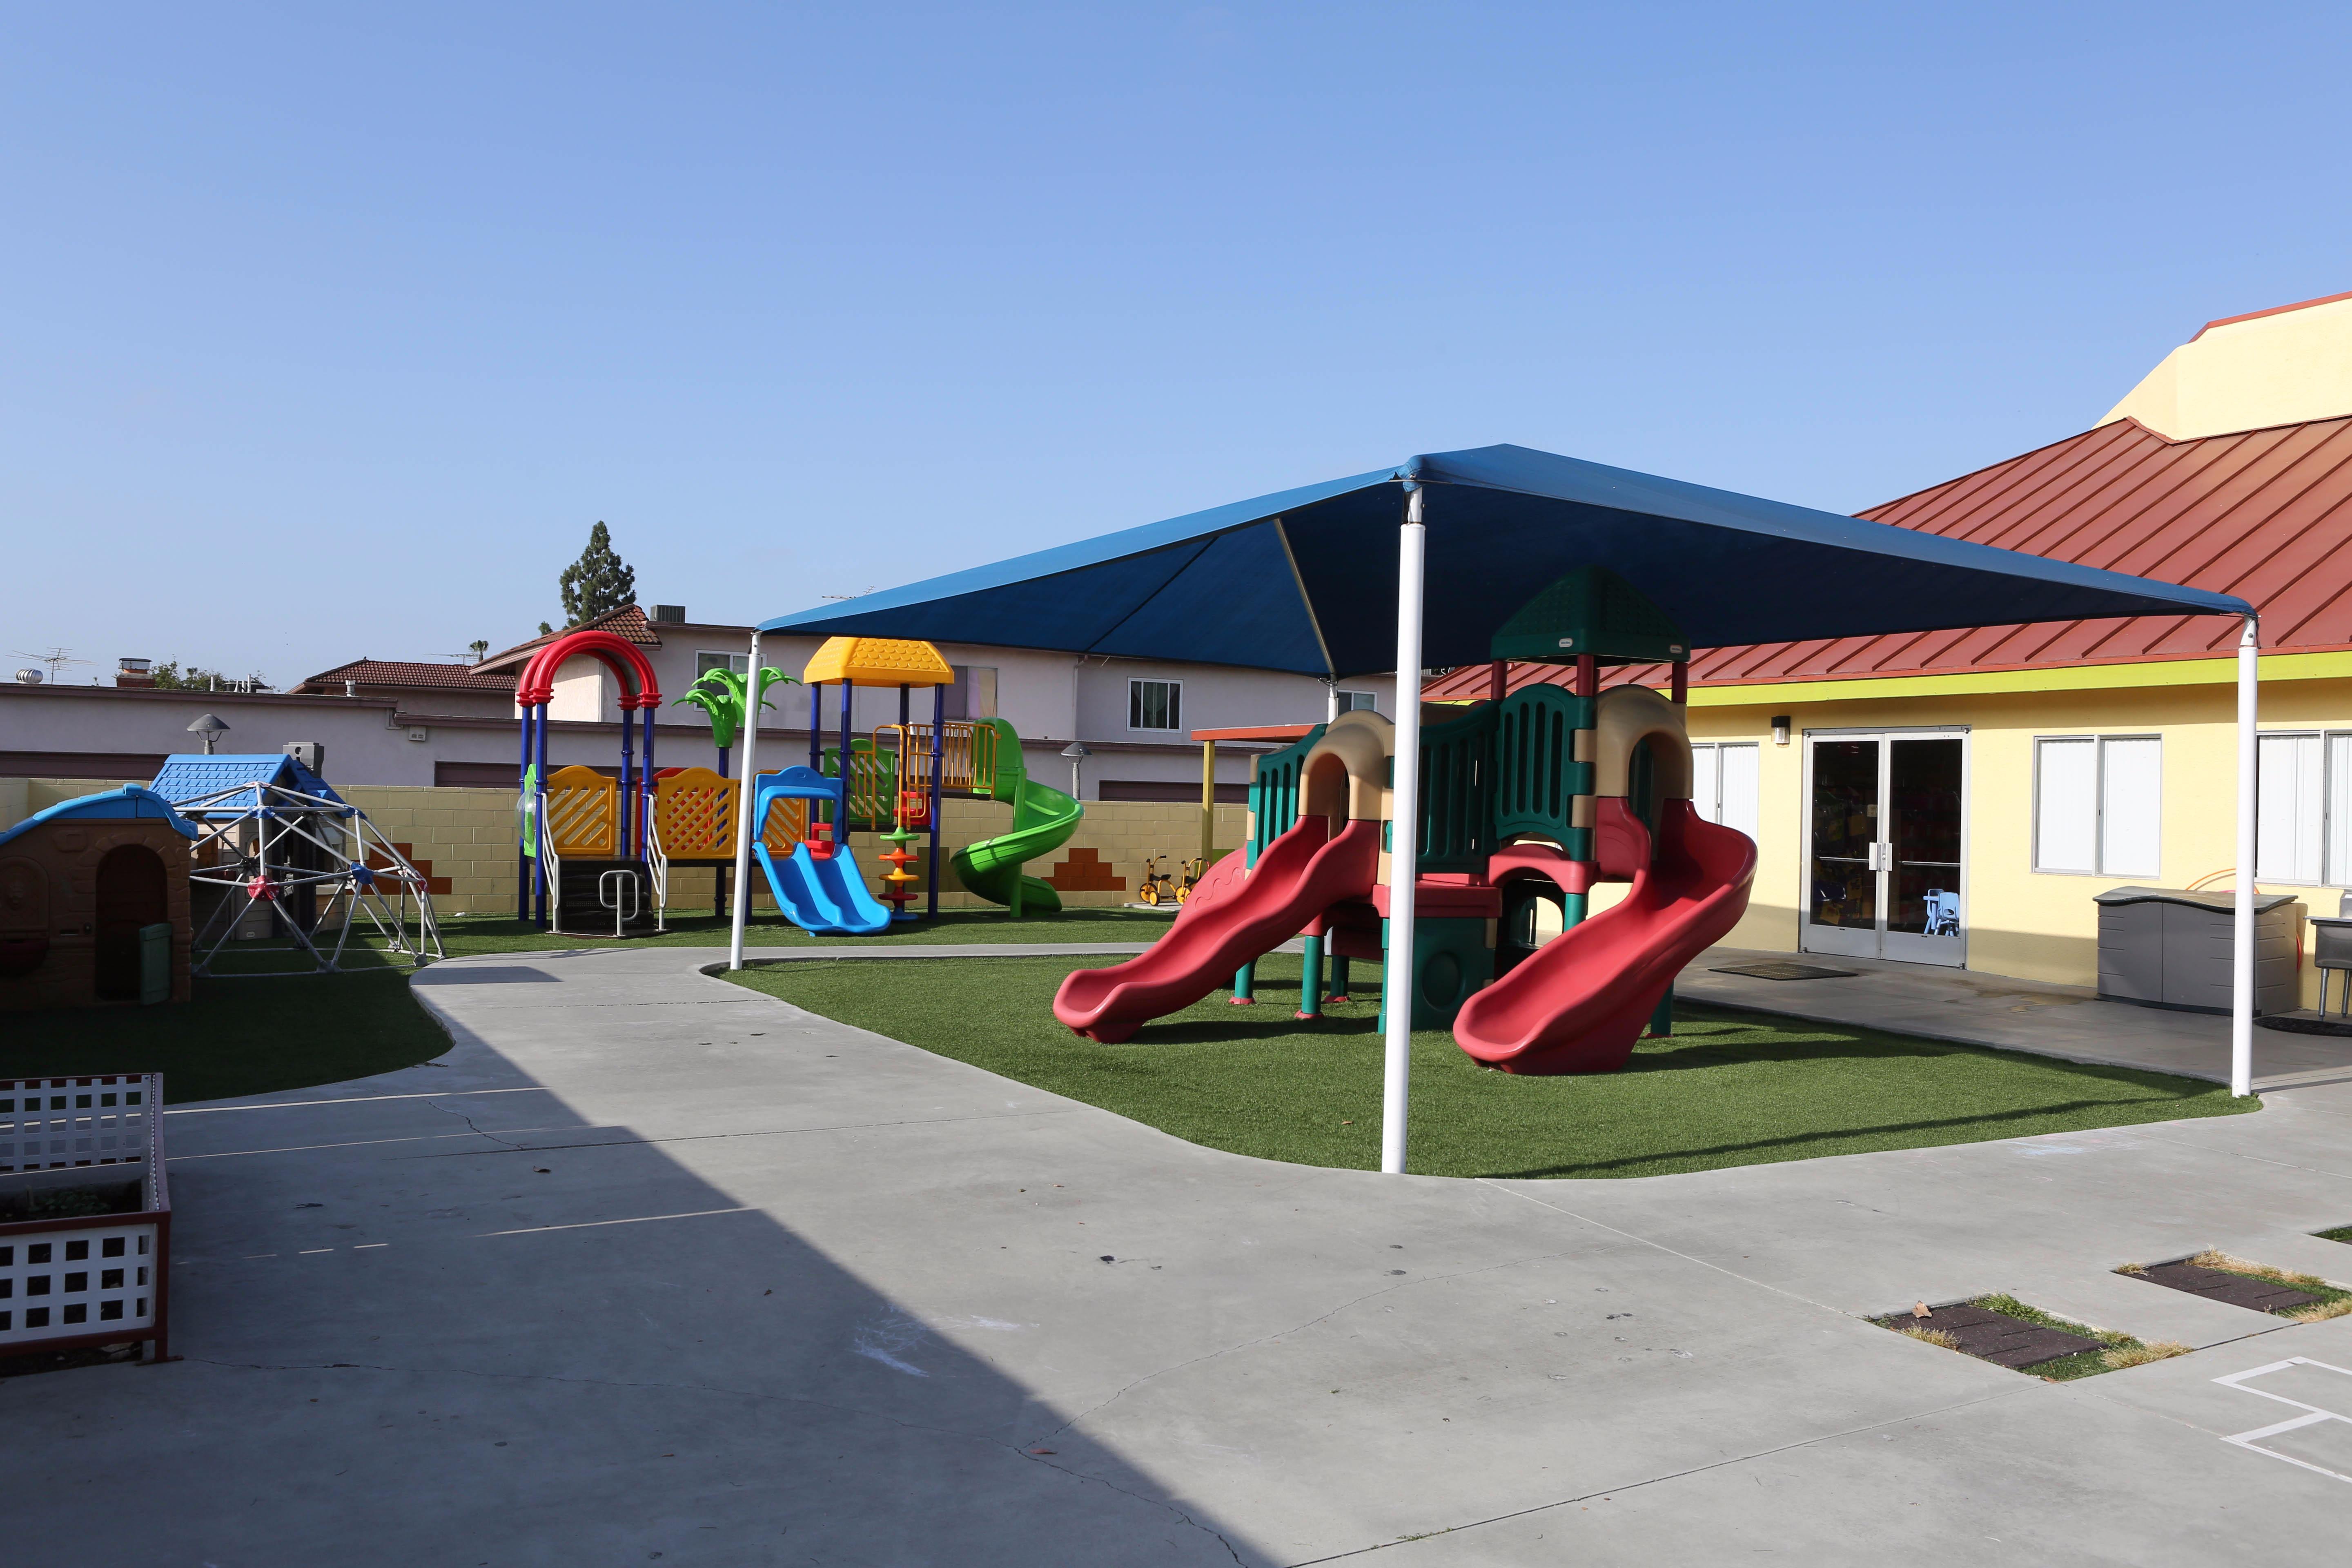 OC Kids Preschool & Kindergarten | 11362 Brookhurst St, Garden Grove, CA, 92840 | +1 (714) 530-7263